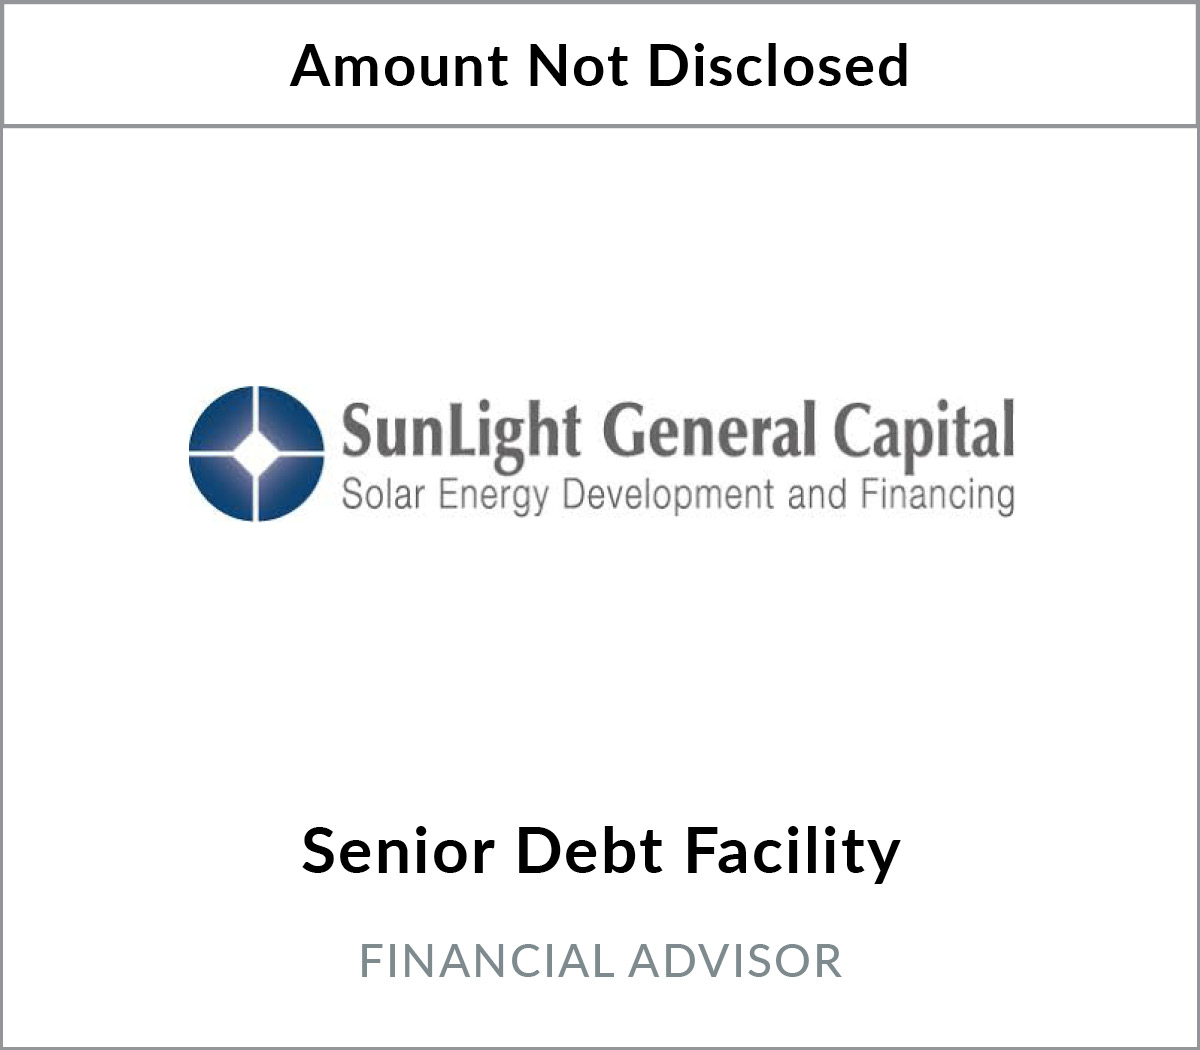 Bryant Park Capital Arranges Senior Debt Placement for SunLight General Capital